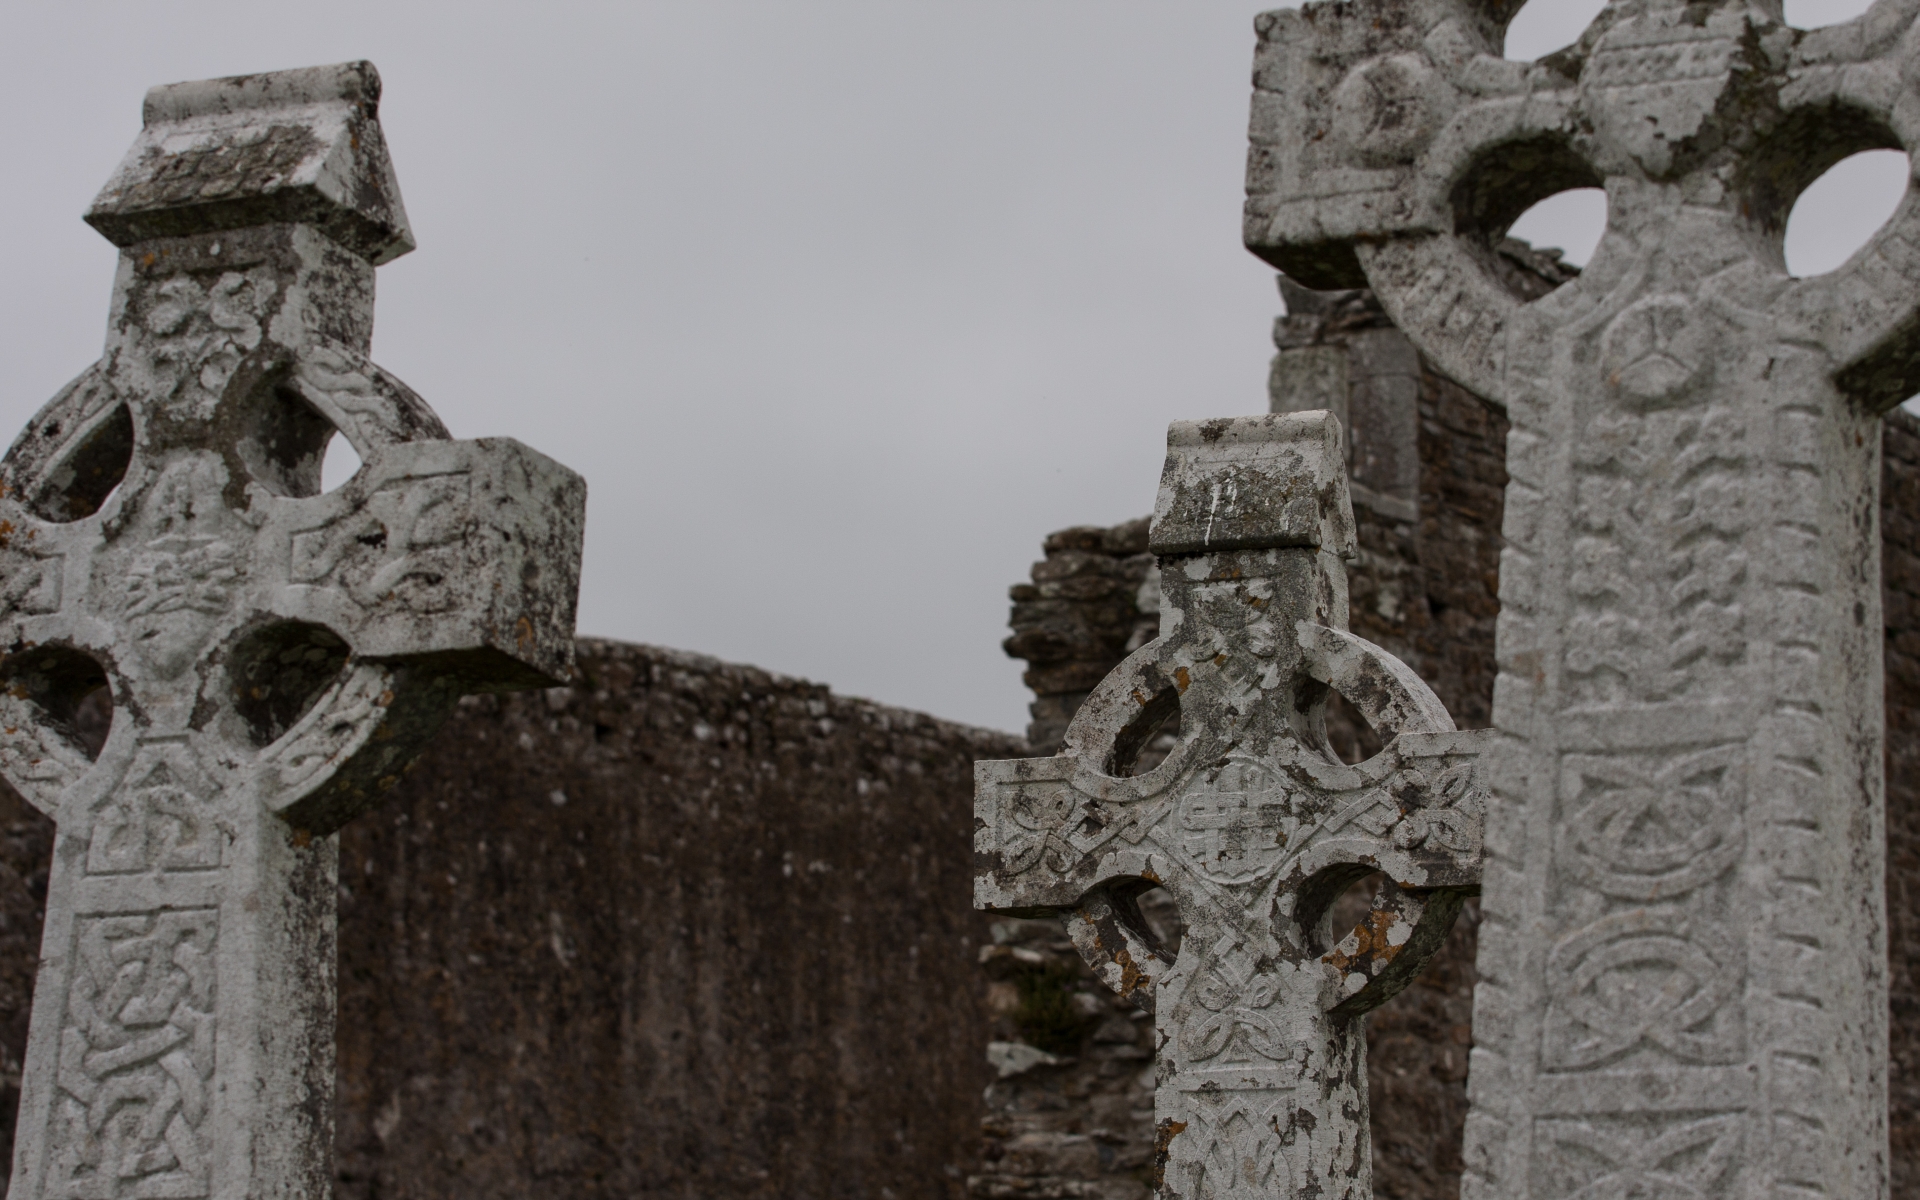 Free download wallpaper Ireland, Cross, Monastery, Religious, Clonmacnoise, Clonmacnoise Monastery on your PC desktop